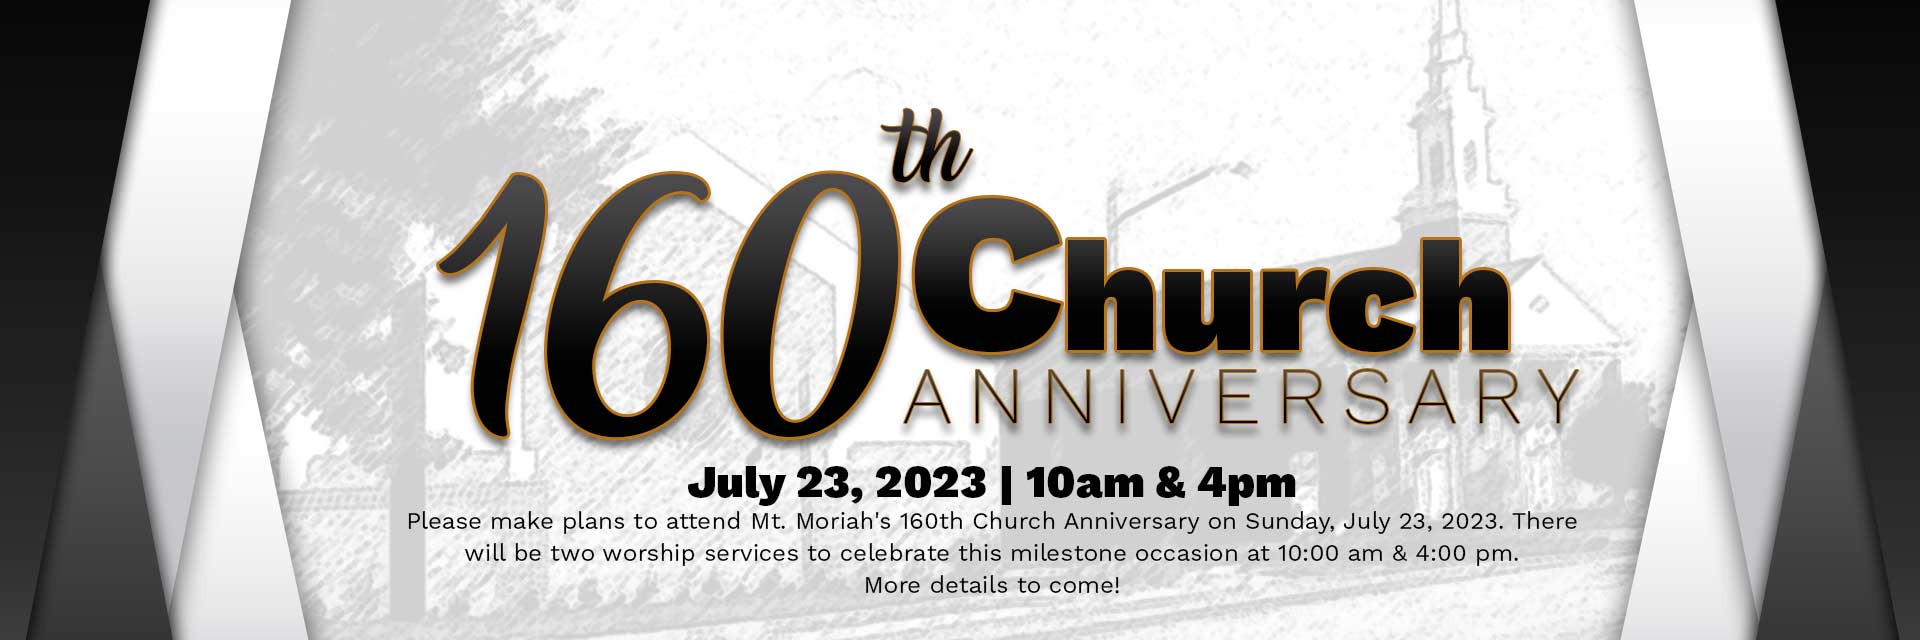 160th Church Anniversary